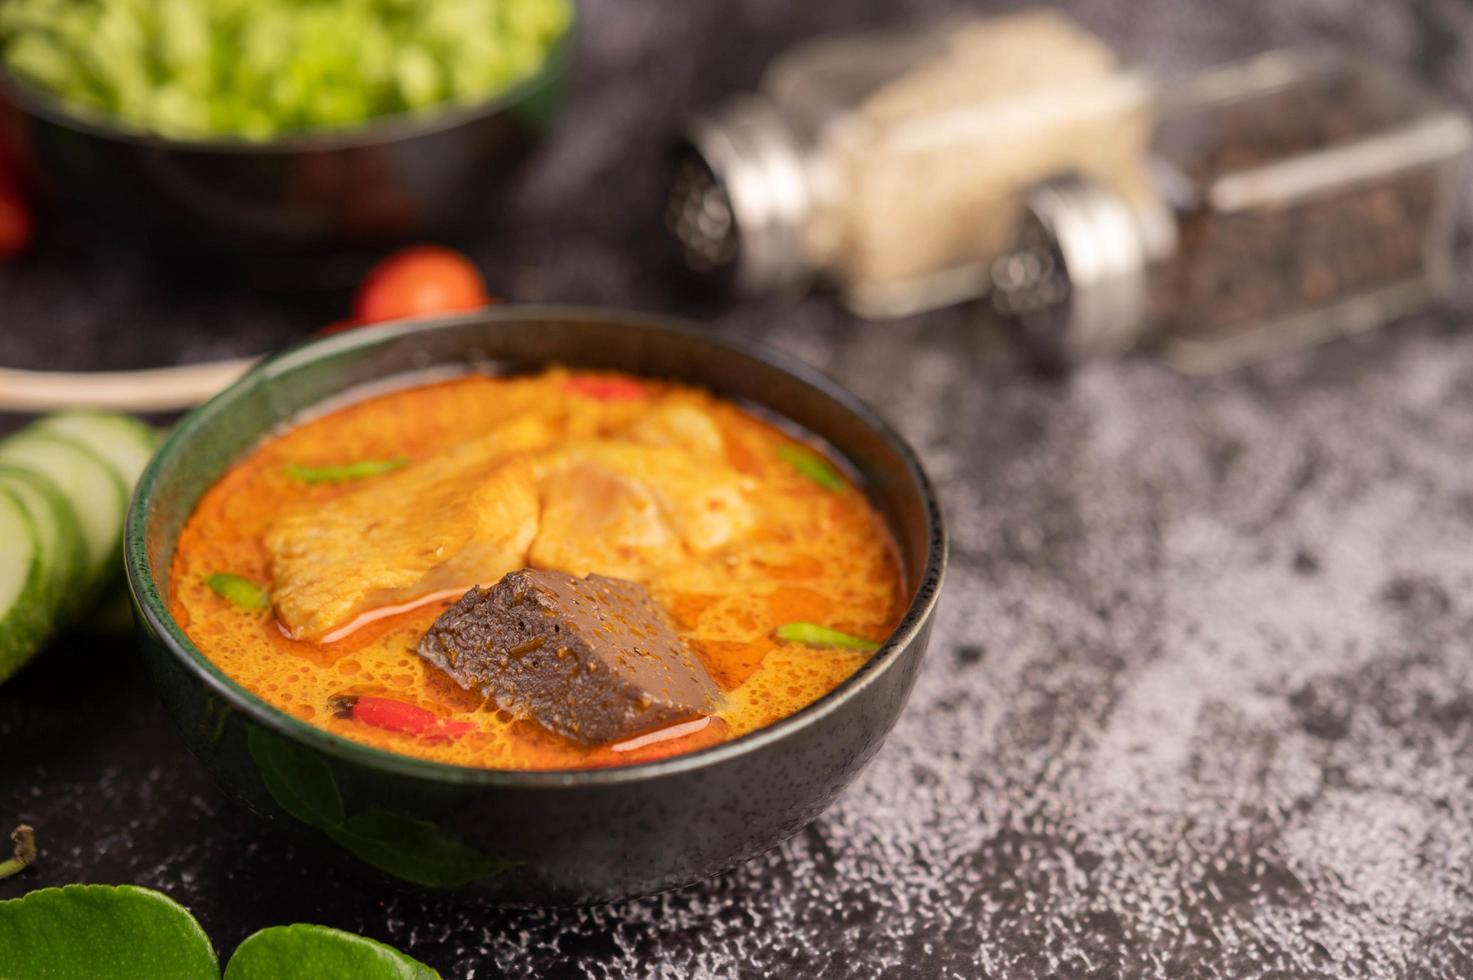 pollo al curry in una tazza nera con aglio e peperoni foto